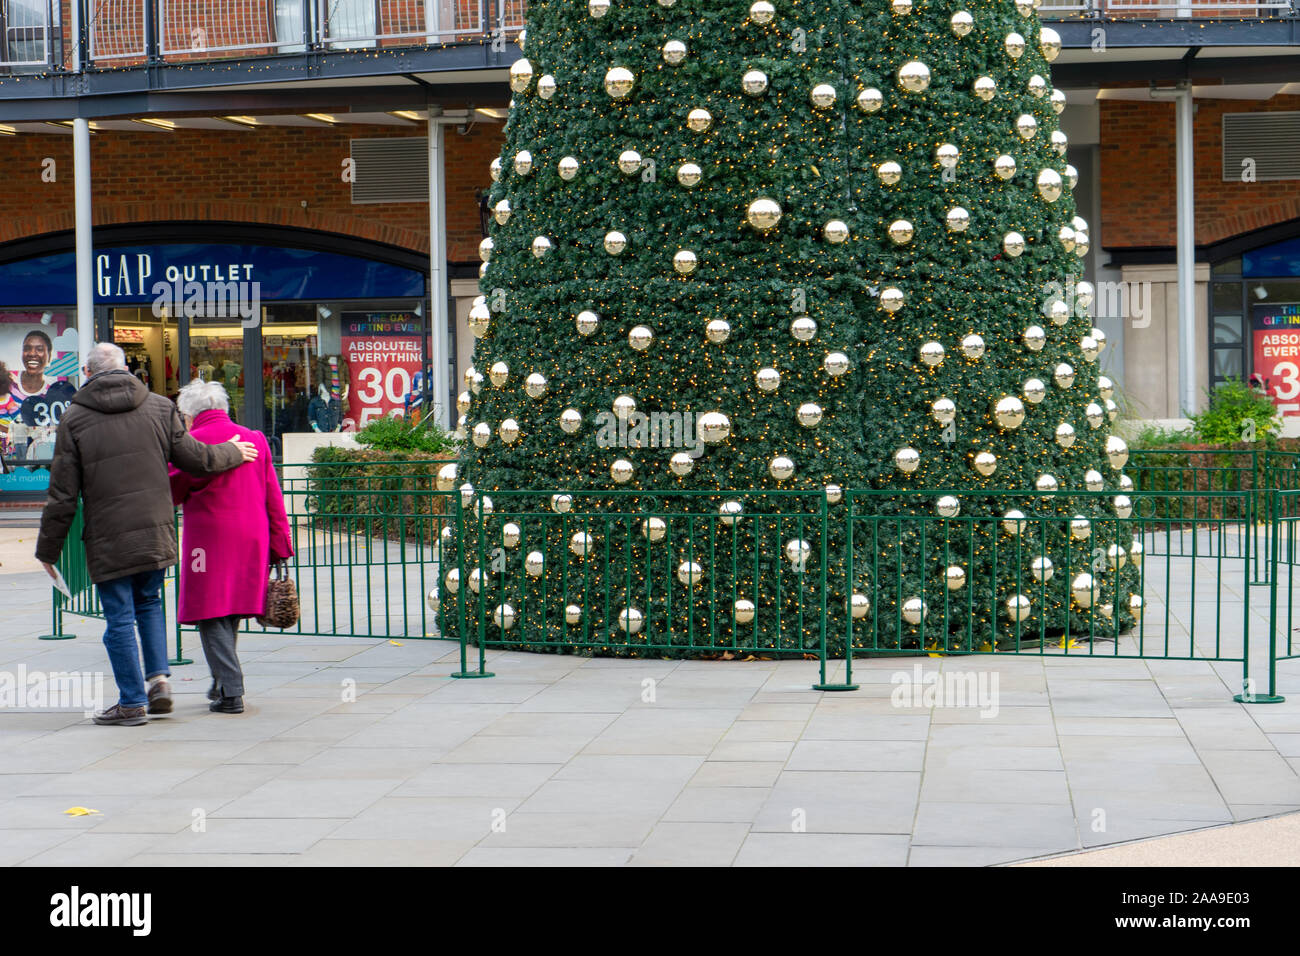 Weihnachtseinkäufer, die an einem großen weihnachtsbaum in der Mitte eines Einkaufszentrums in Portsmouth, Hampshire, Großbritannien, vorbeilaufen Stockfoto